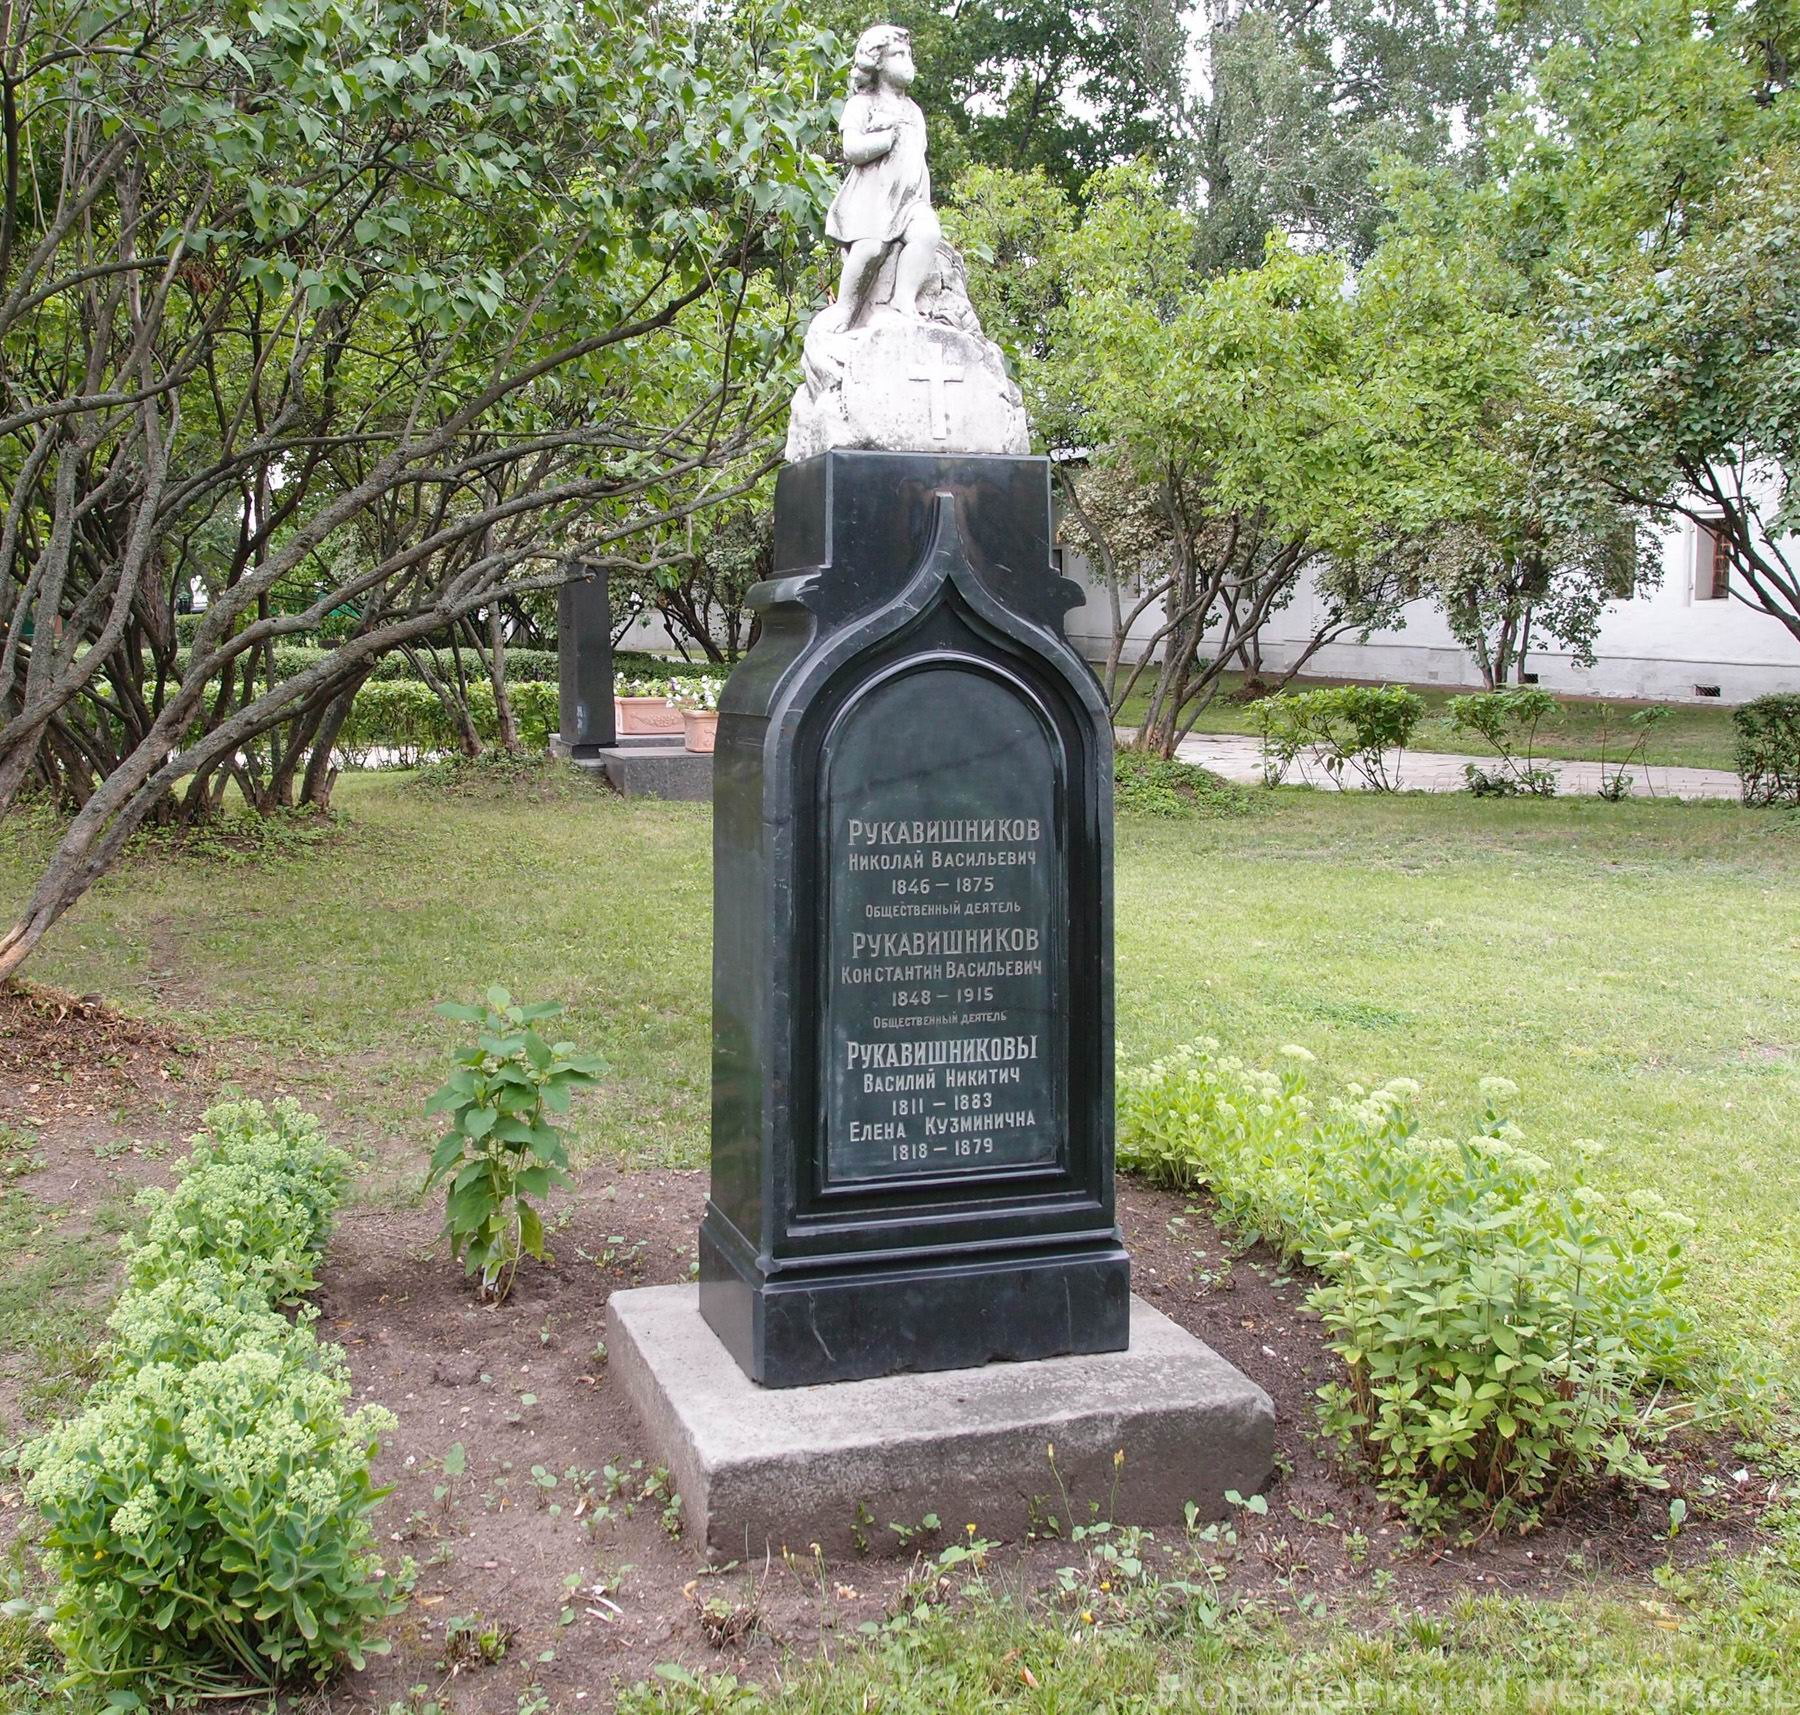 Памятник на могиле Рукавишниковых Н.В. (1845–1875) и К.В. (1848–1915), в Новодевичьем монастыре. Нажмите левую кнопку мыши, чтобы увидеть фрагмент памятника.